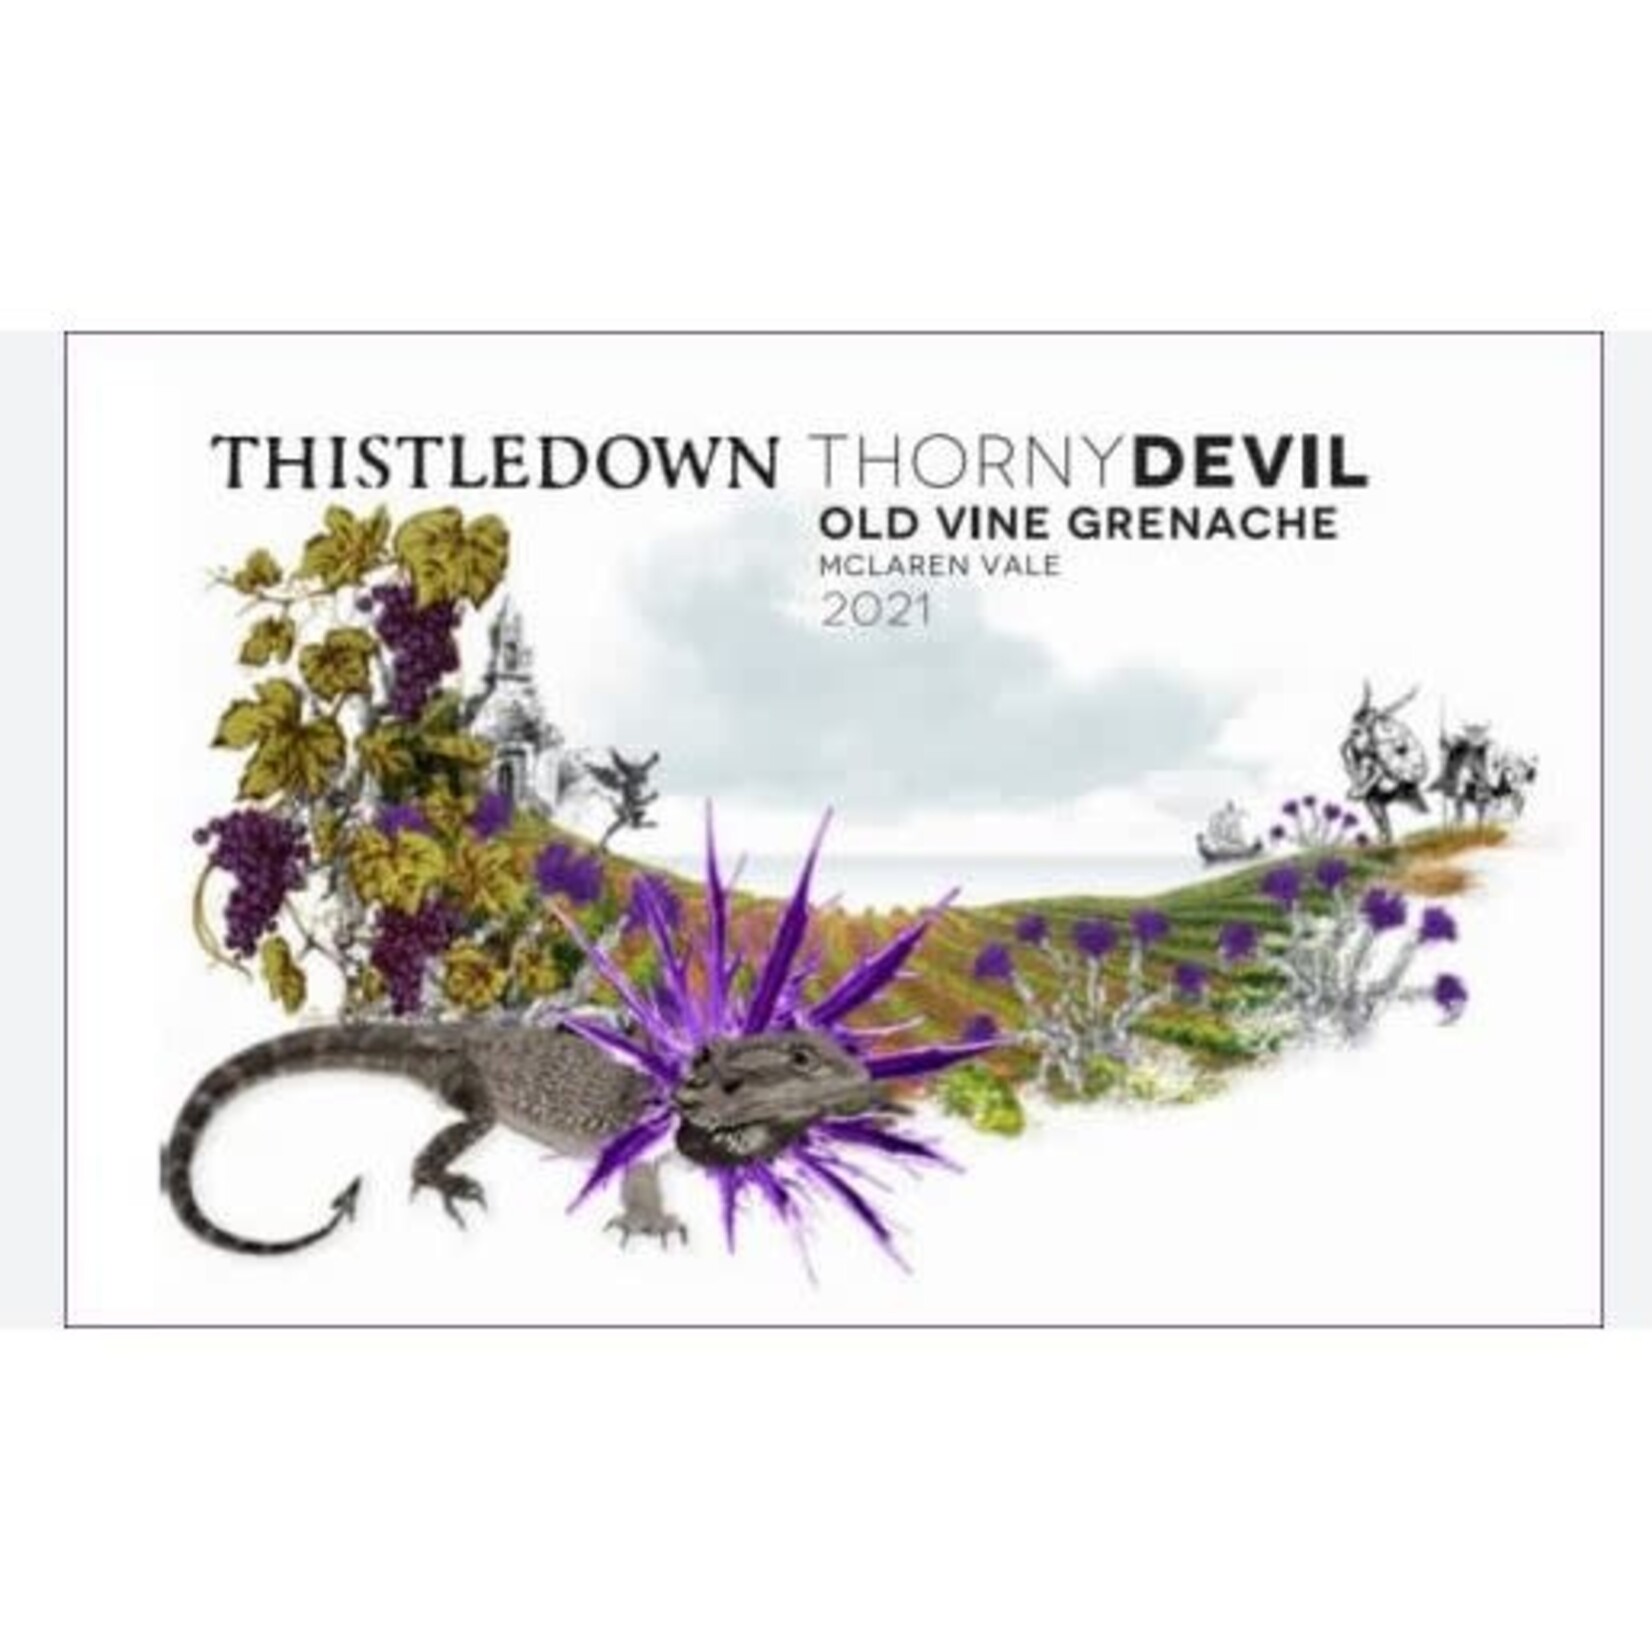 Thistledown TD Thistledown Thorny Devil Old Vine Grenache McLaren Vale 2021,  Australia